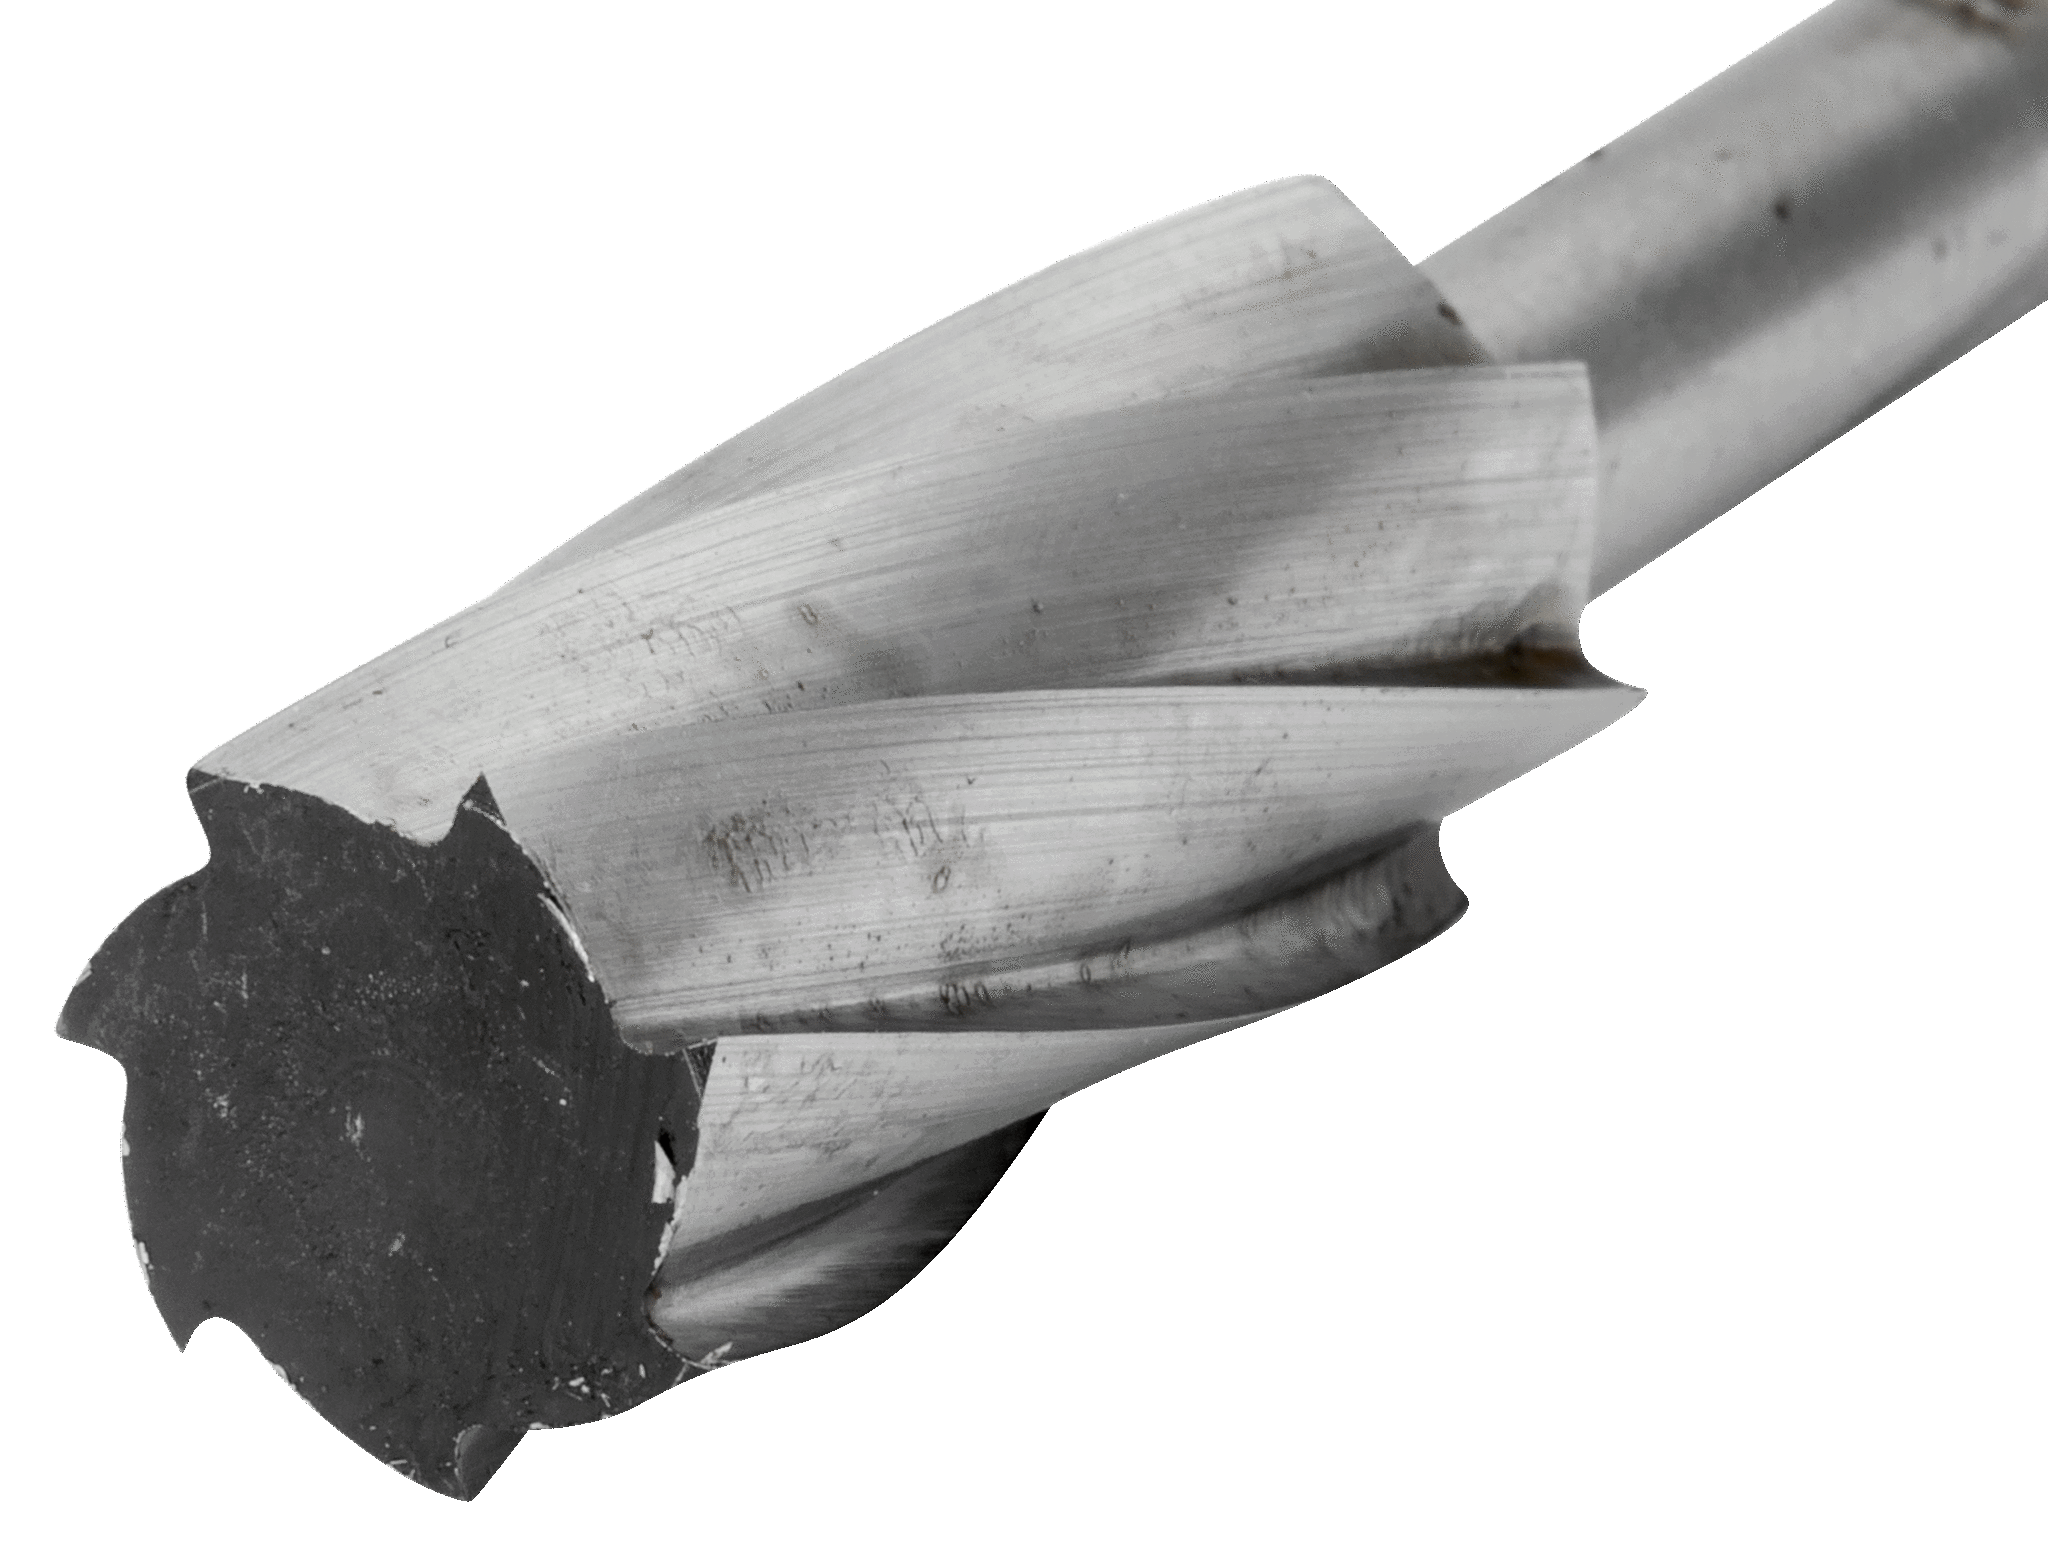 картинка Борфрезы из быстрорежущей стали с цилиндрической головкой BAHCO HSSG-A1225M от магазина "Элит-инструмент"